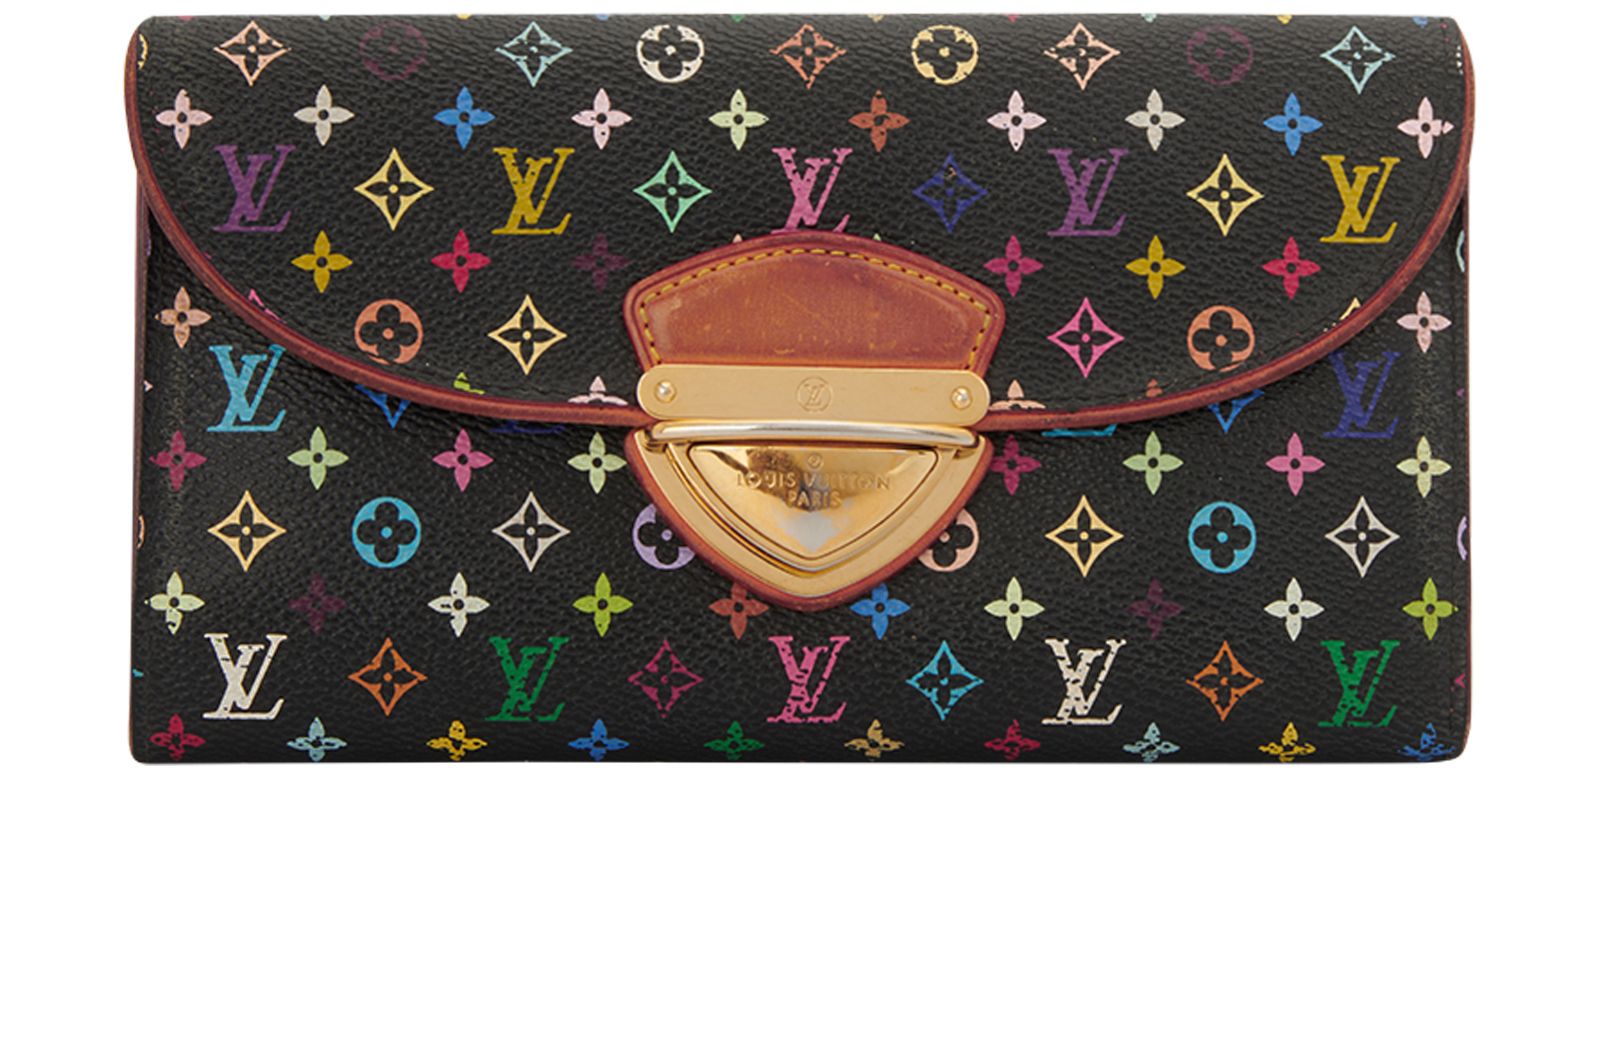 Louis Vuitton Monogram Multicolor Coin Purse Small Wallet